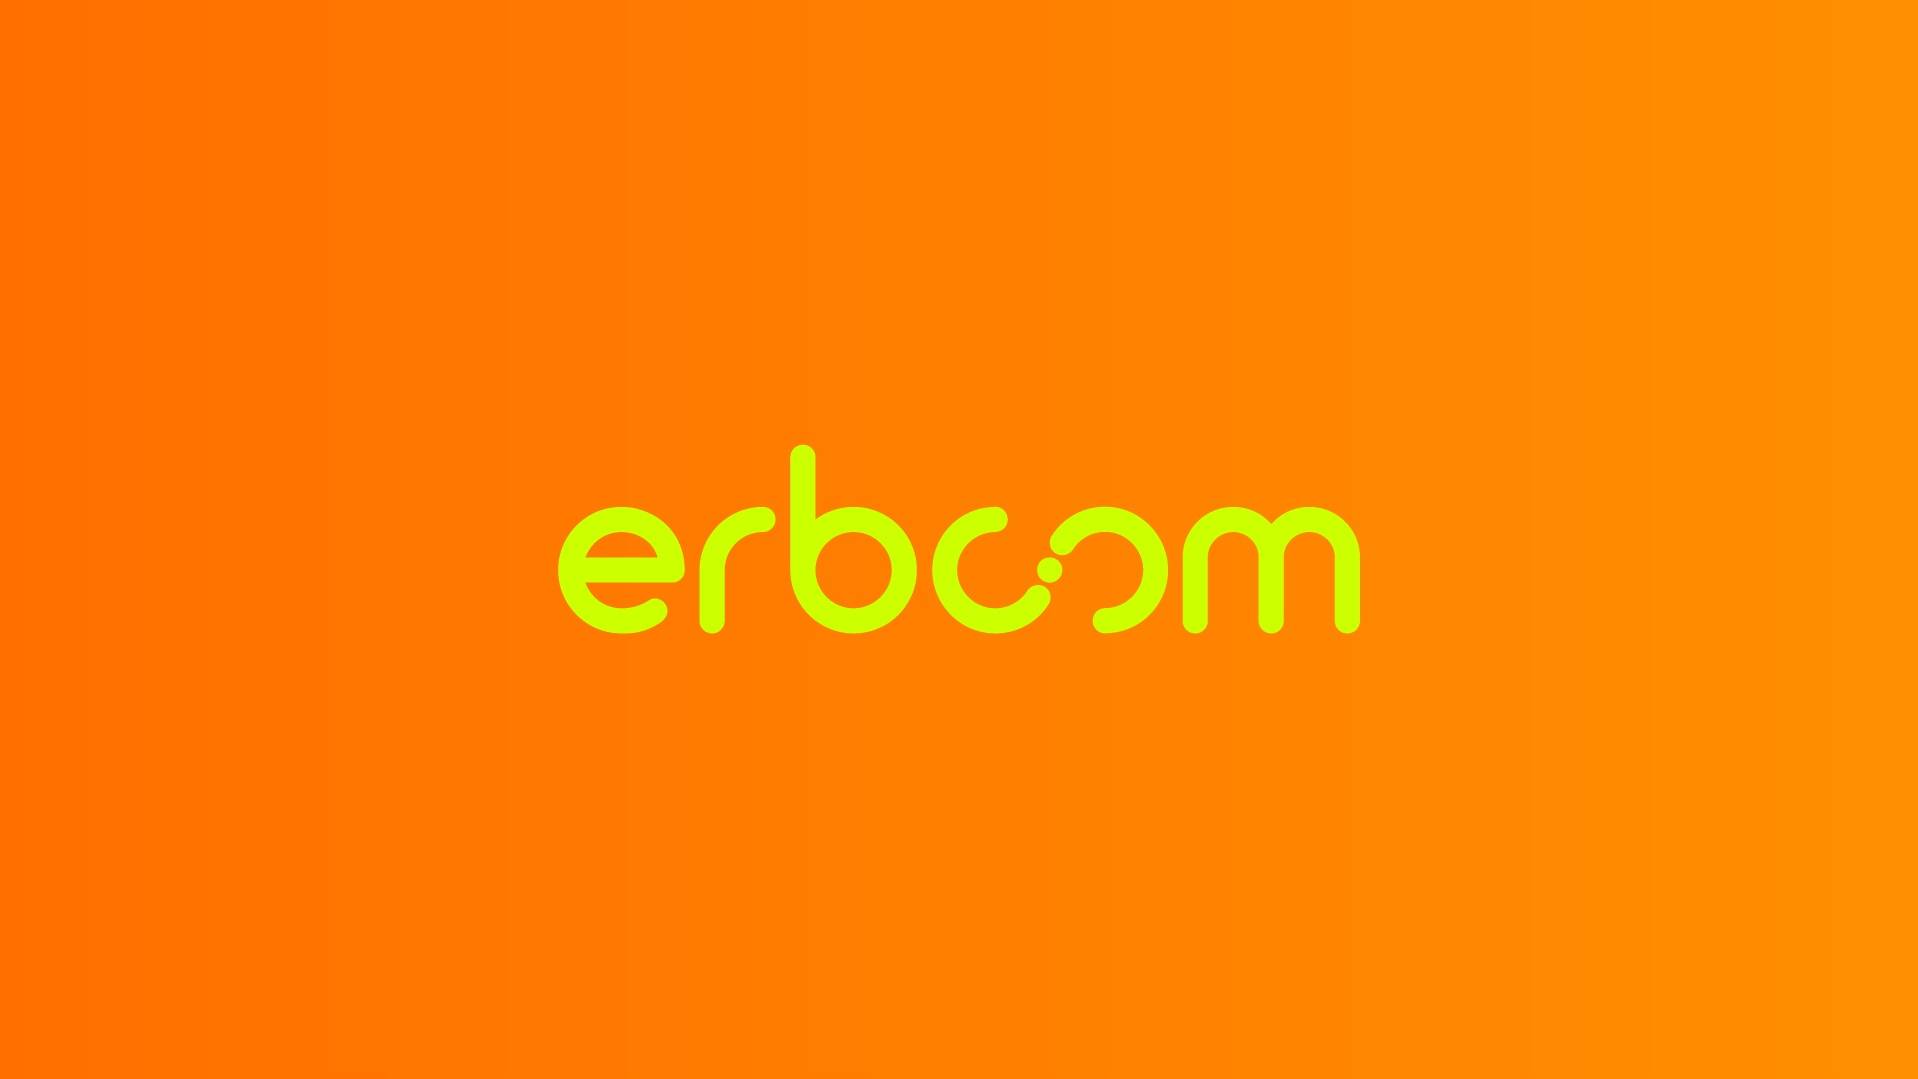 ERBCOM comemora nove anos de Inovação, com Ofertas Exclusivas e Nova Identidade